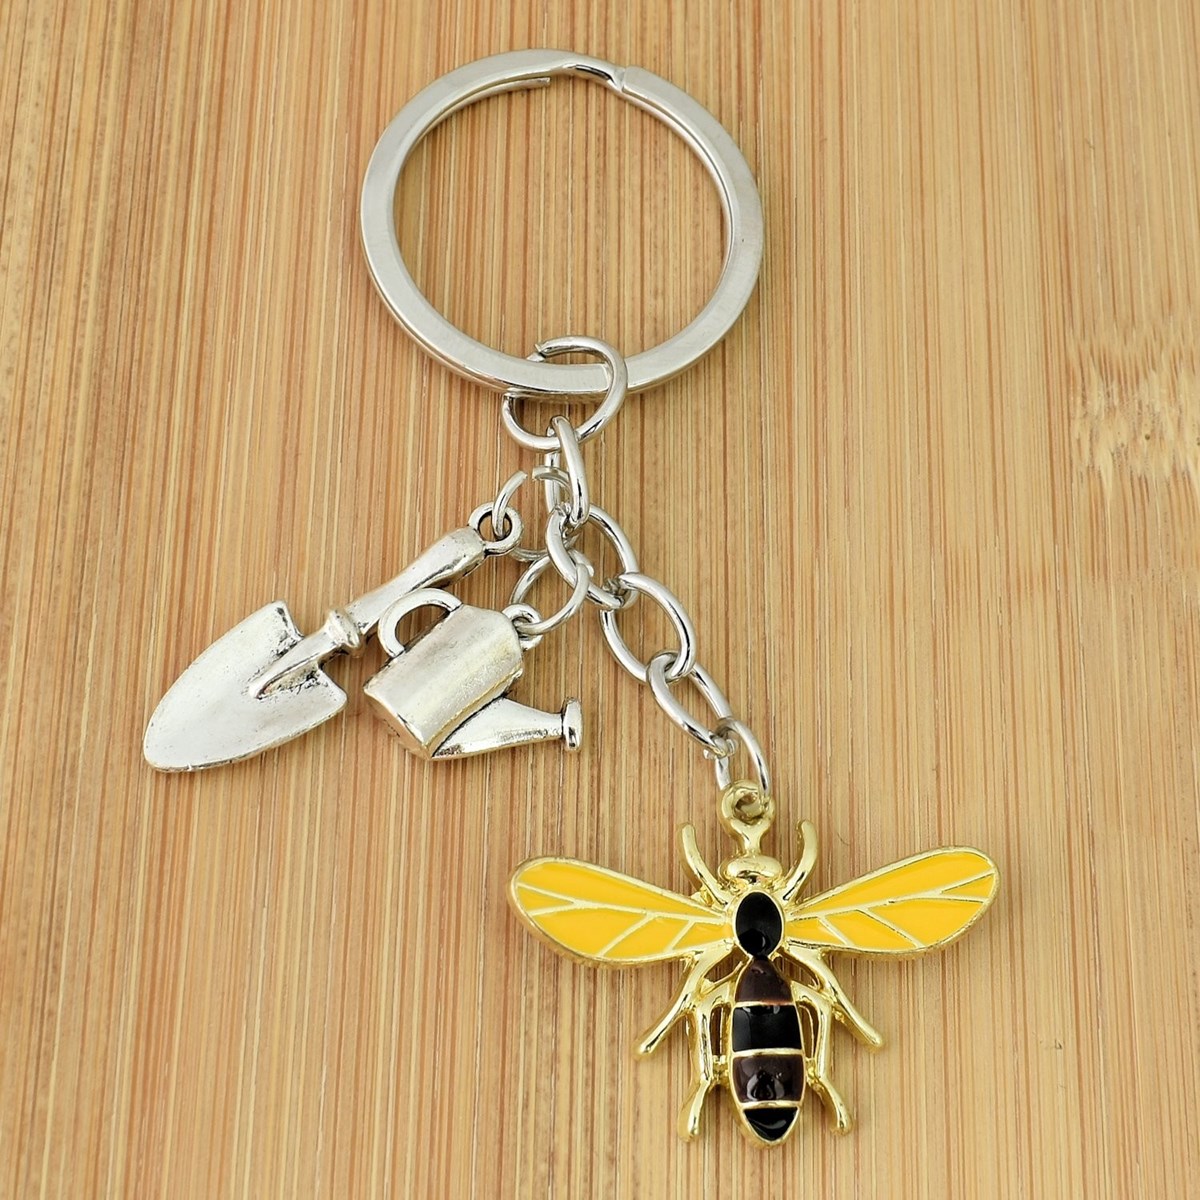 Porte-clés jardinier abeille pelle arrosoir argenté - vue 2